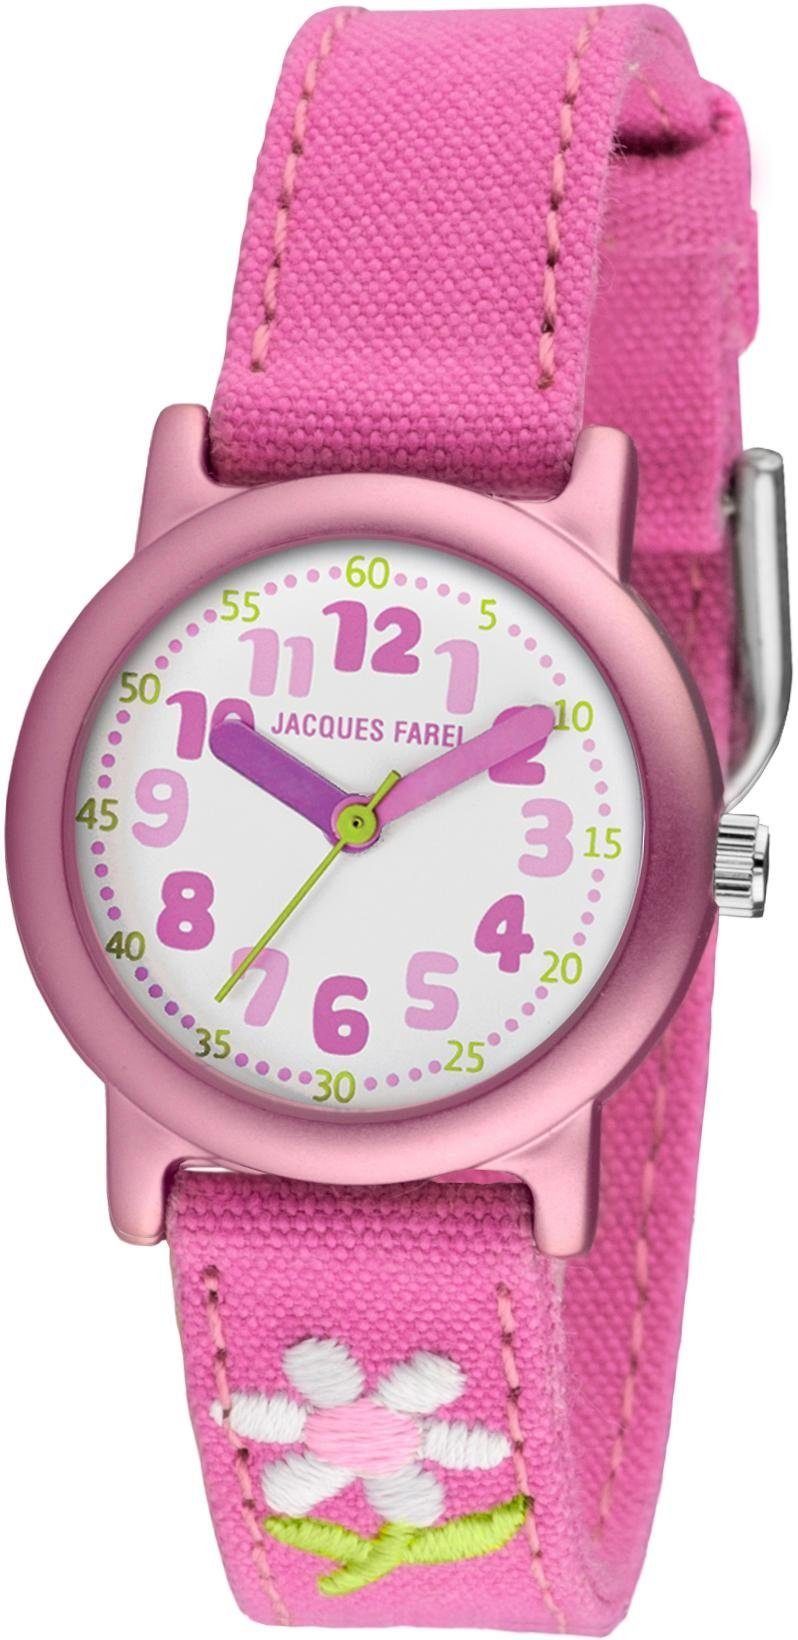 Jacques Farel Quarzuhr ORG 1111, ideal auch als Geschenk, mit Blumenmotiv,  Gehäuse aus Reinaluminium mit veredelter Oberfläche, rosa metallic